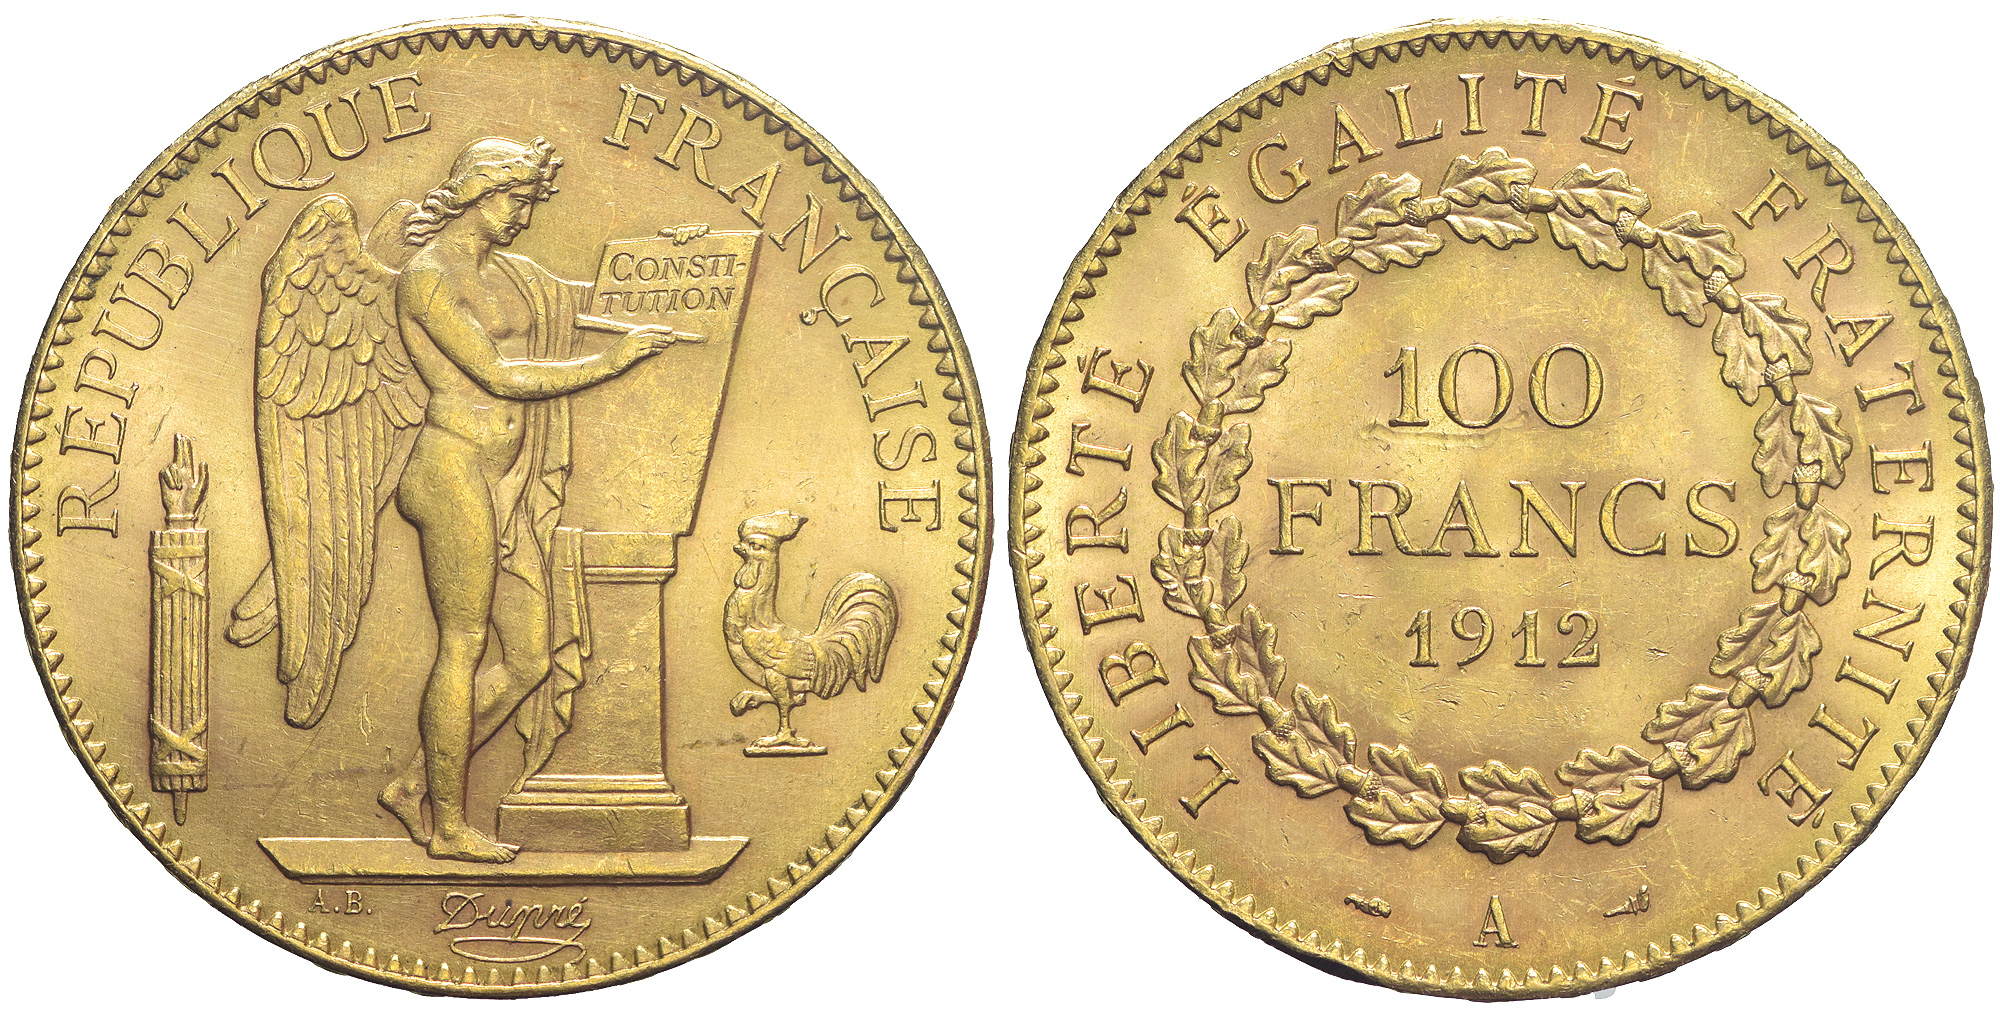 France Third Republic Francs 1912 Gold 